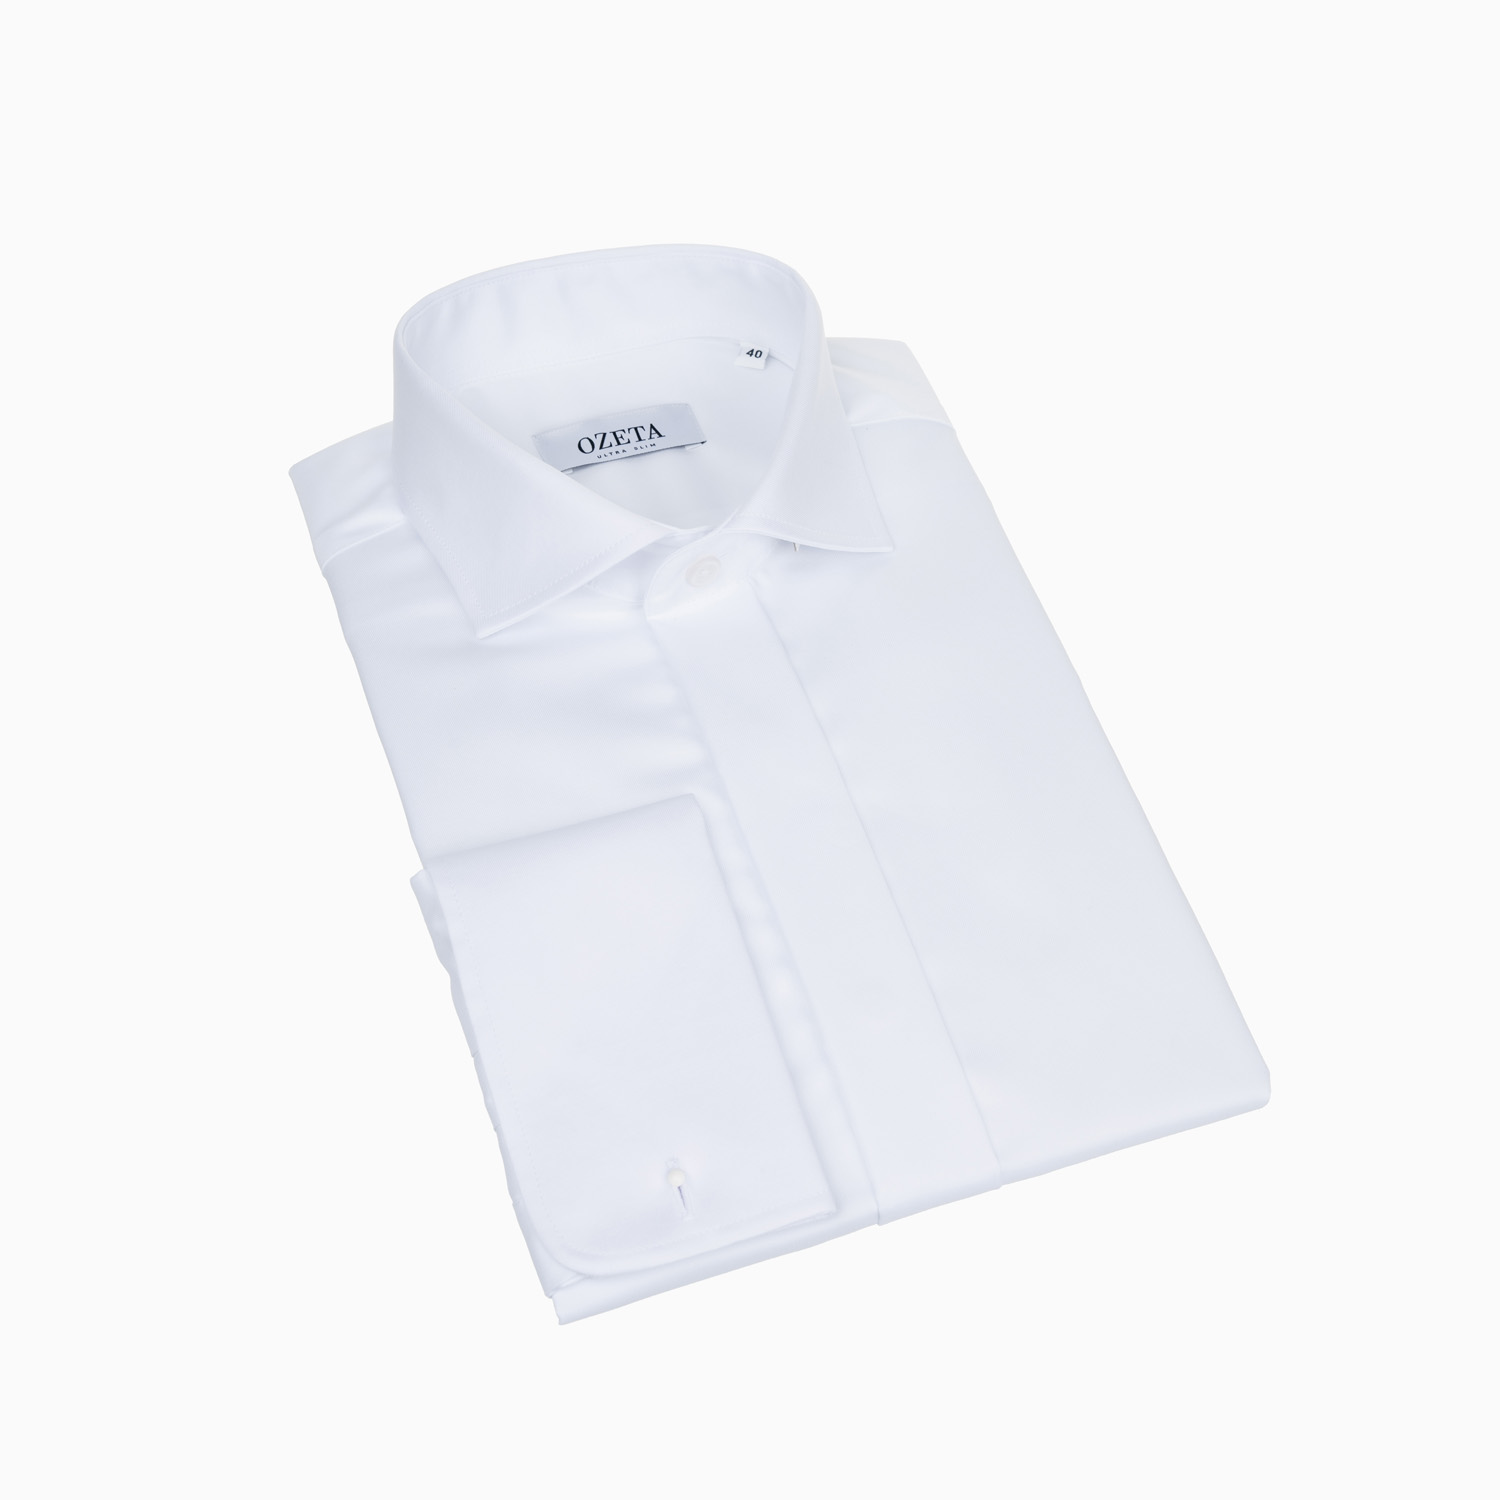 Manschettenhemd Weiß - Verlängerte Ärmel - Slim Fit